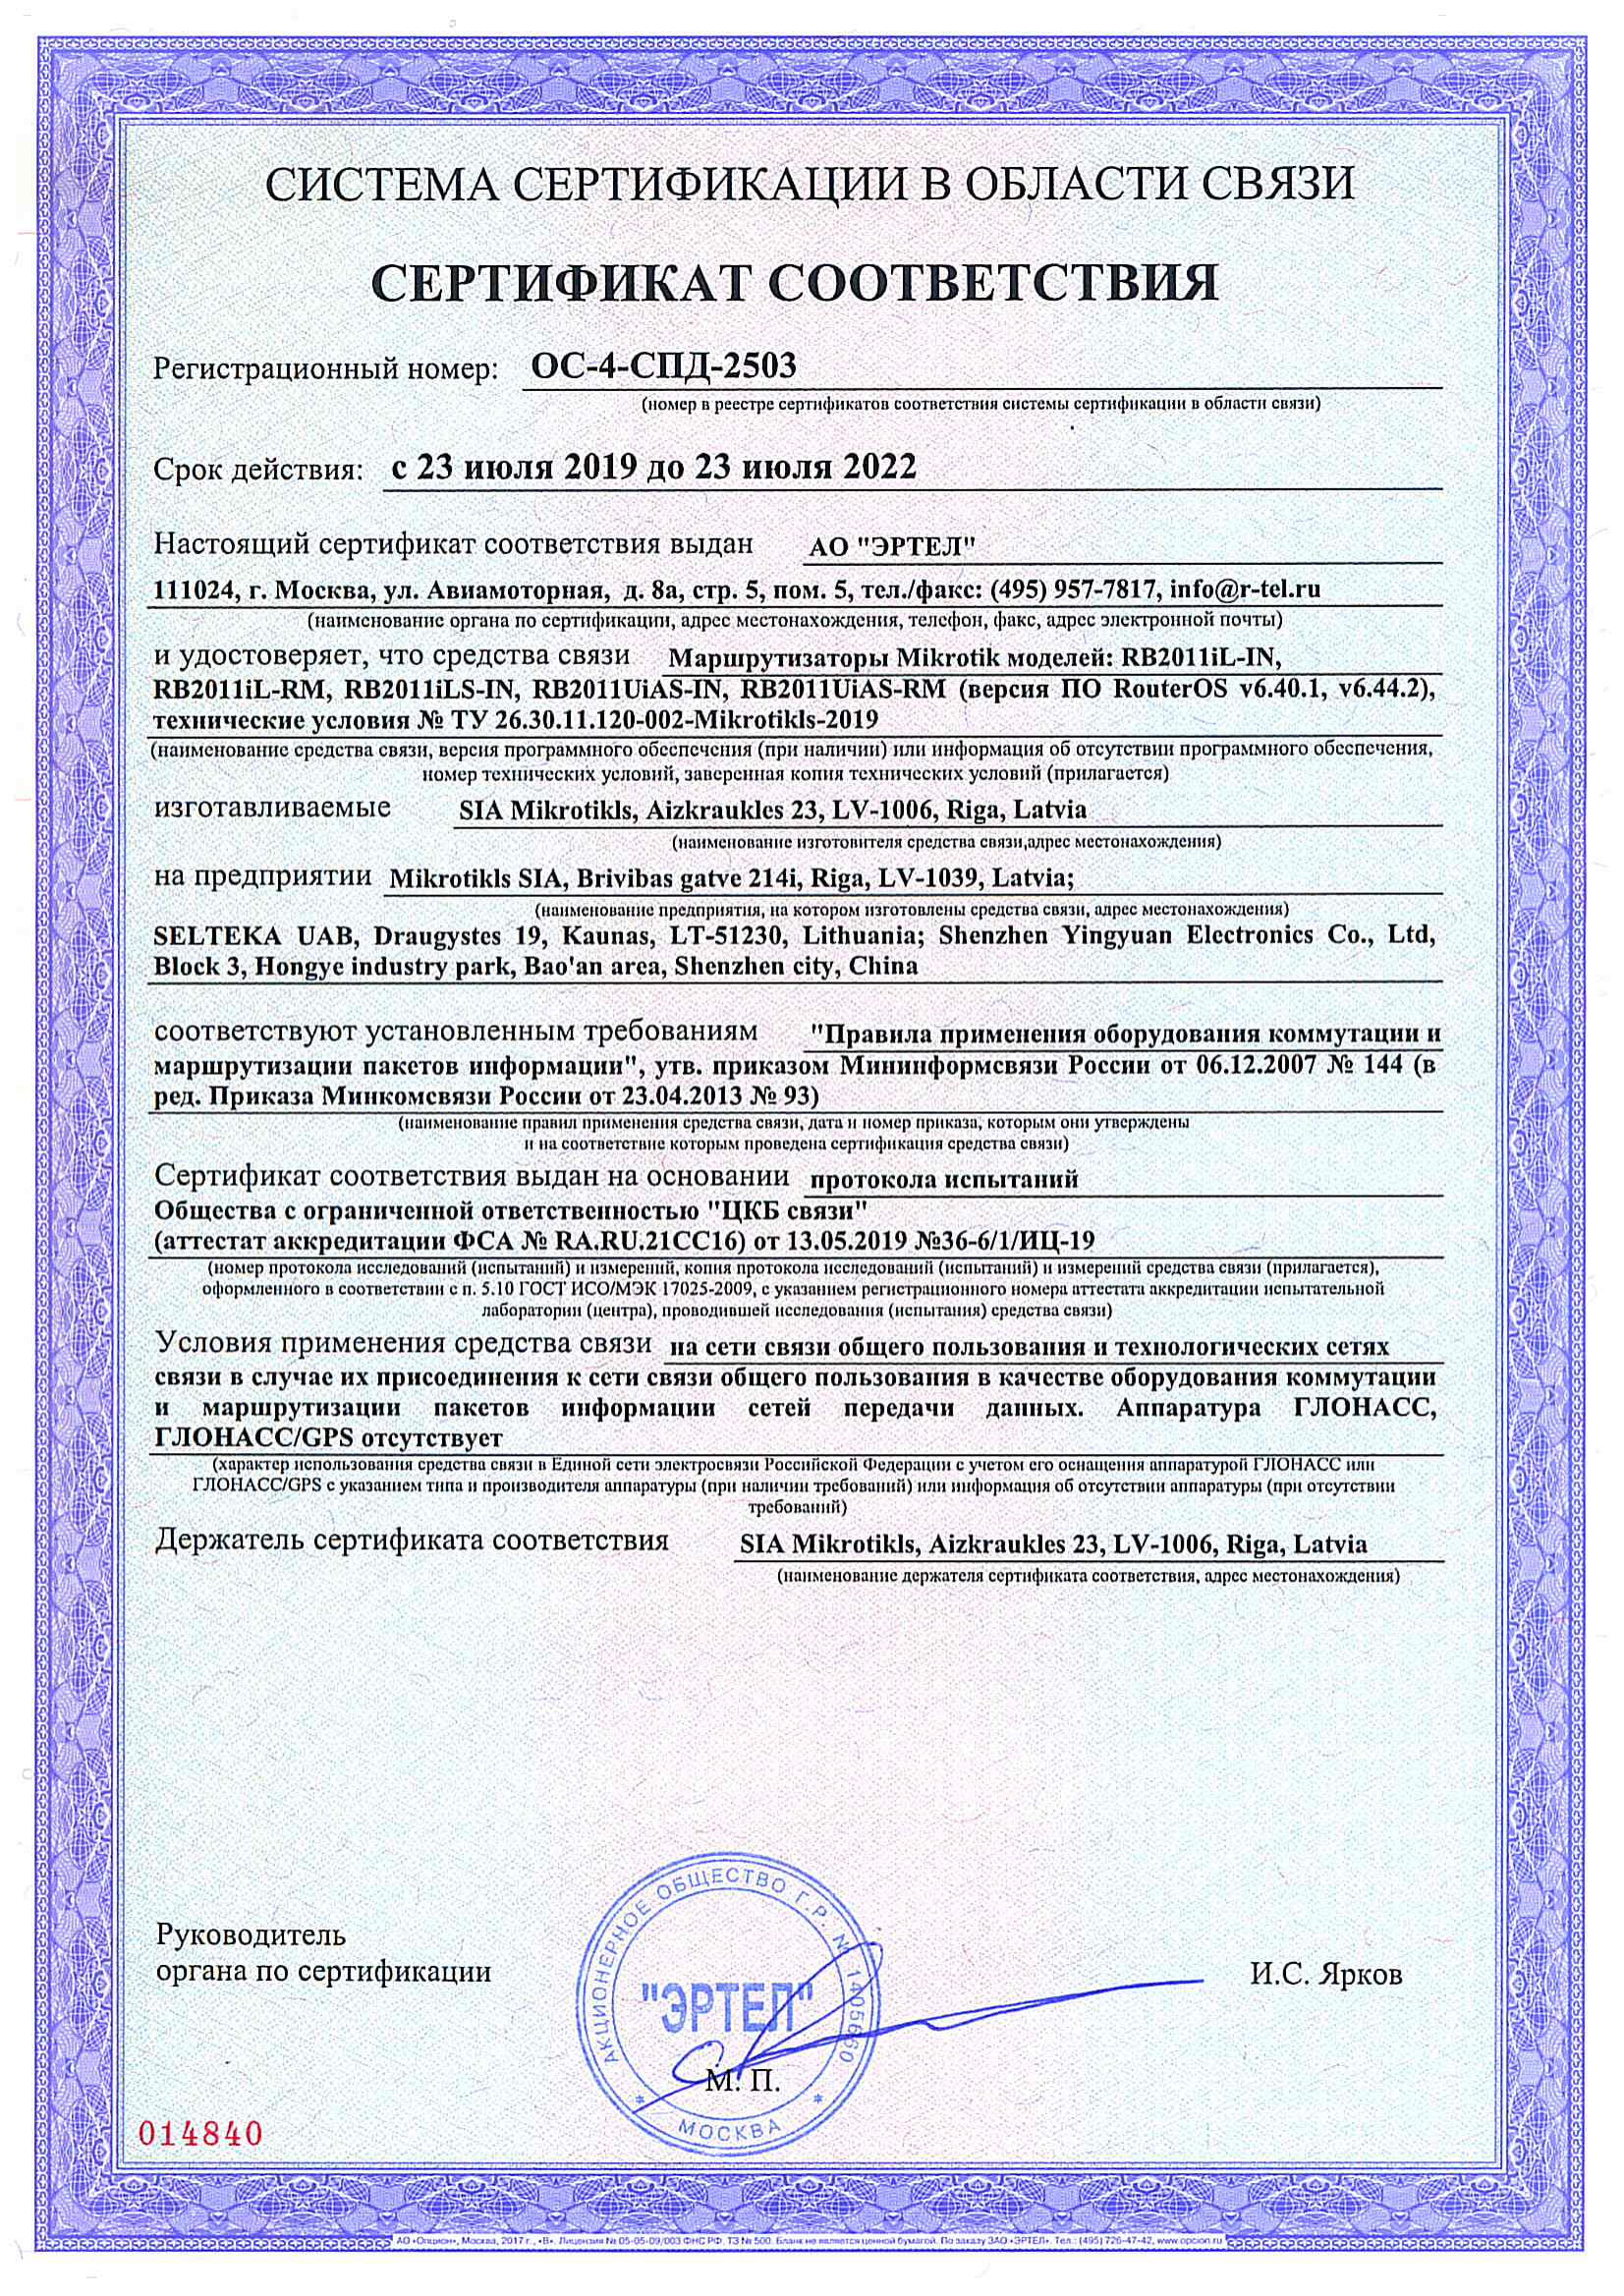 Сертификат соответствия в области связи ОС-4-СПД-2503